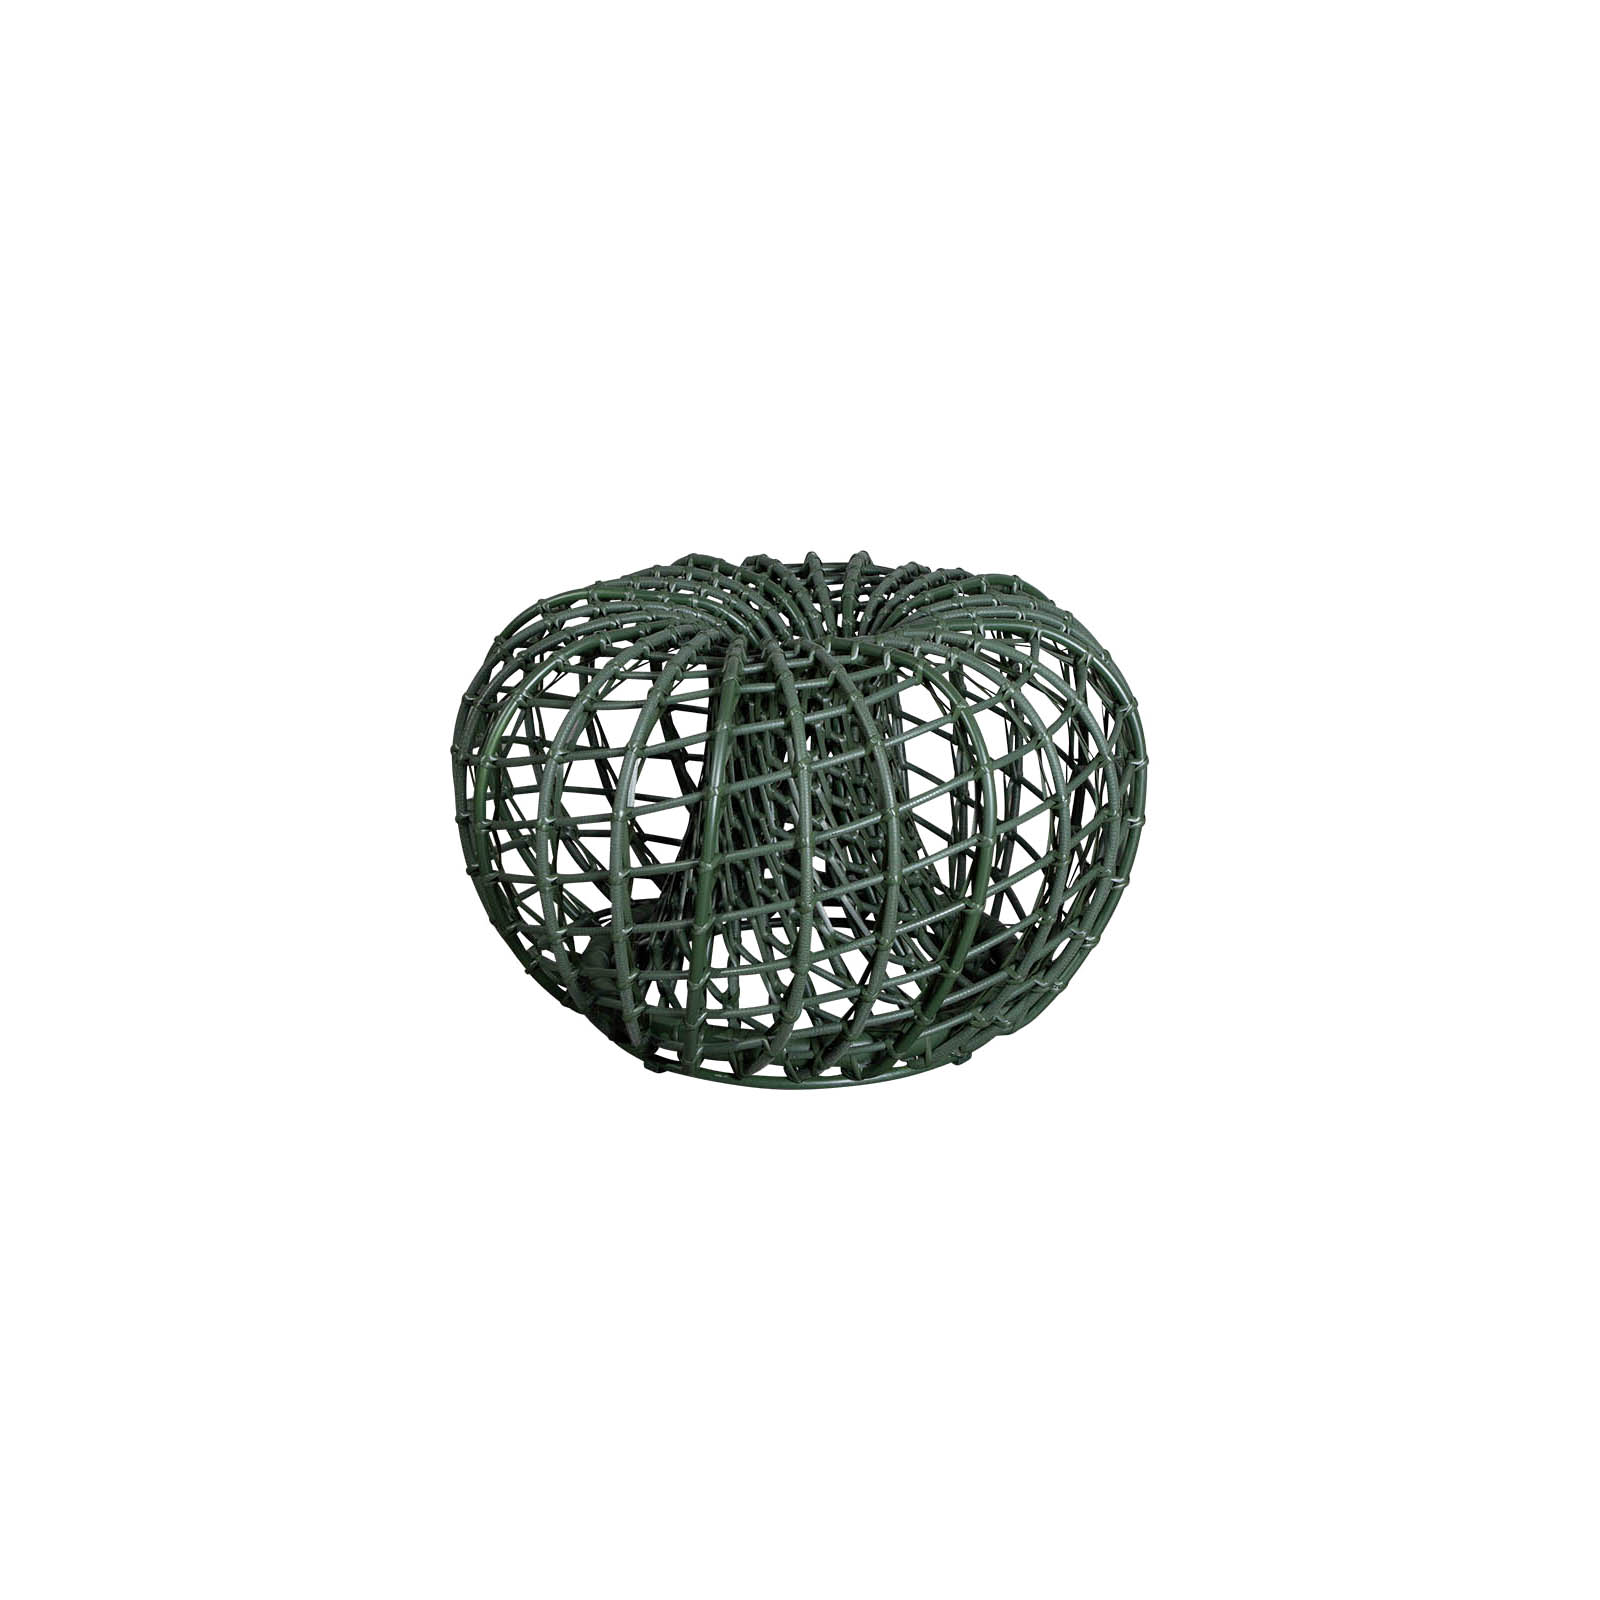 Nest Couchtisch oder Hocker kein mit Durchmesser 67 cm aus Cane-line Weave in Dark Green